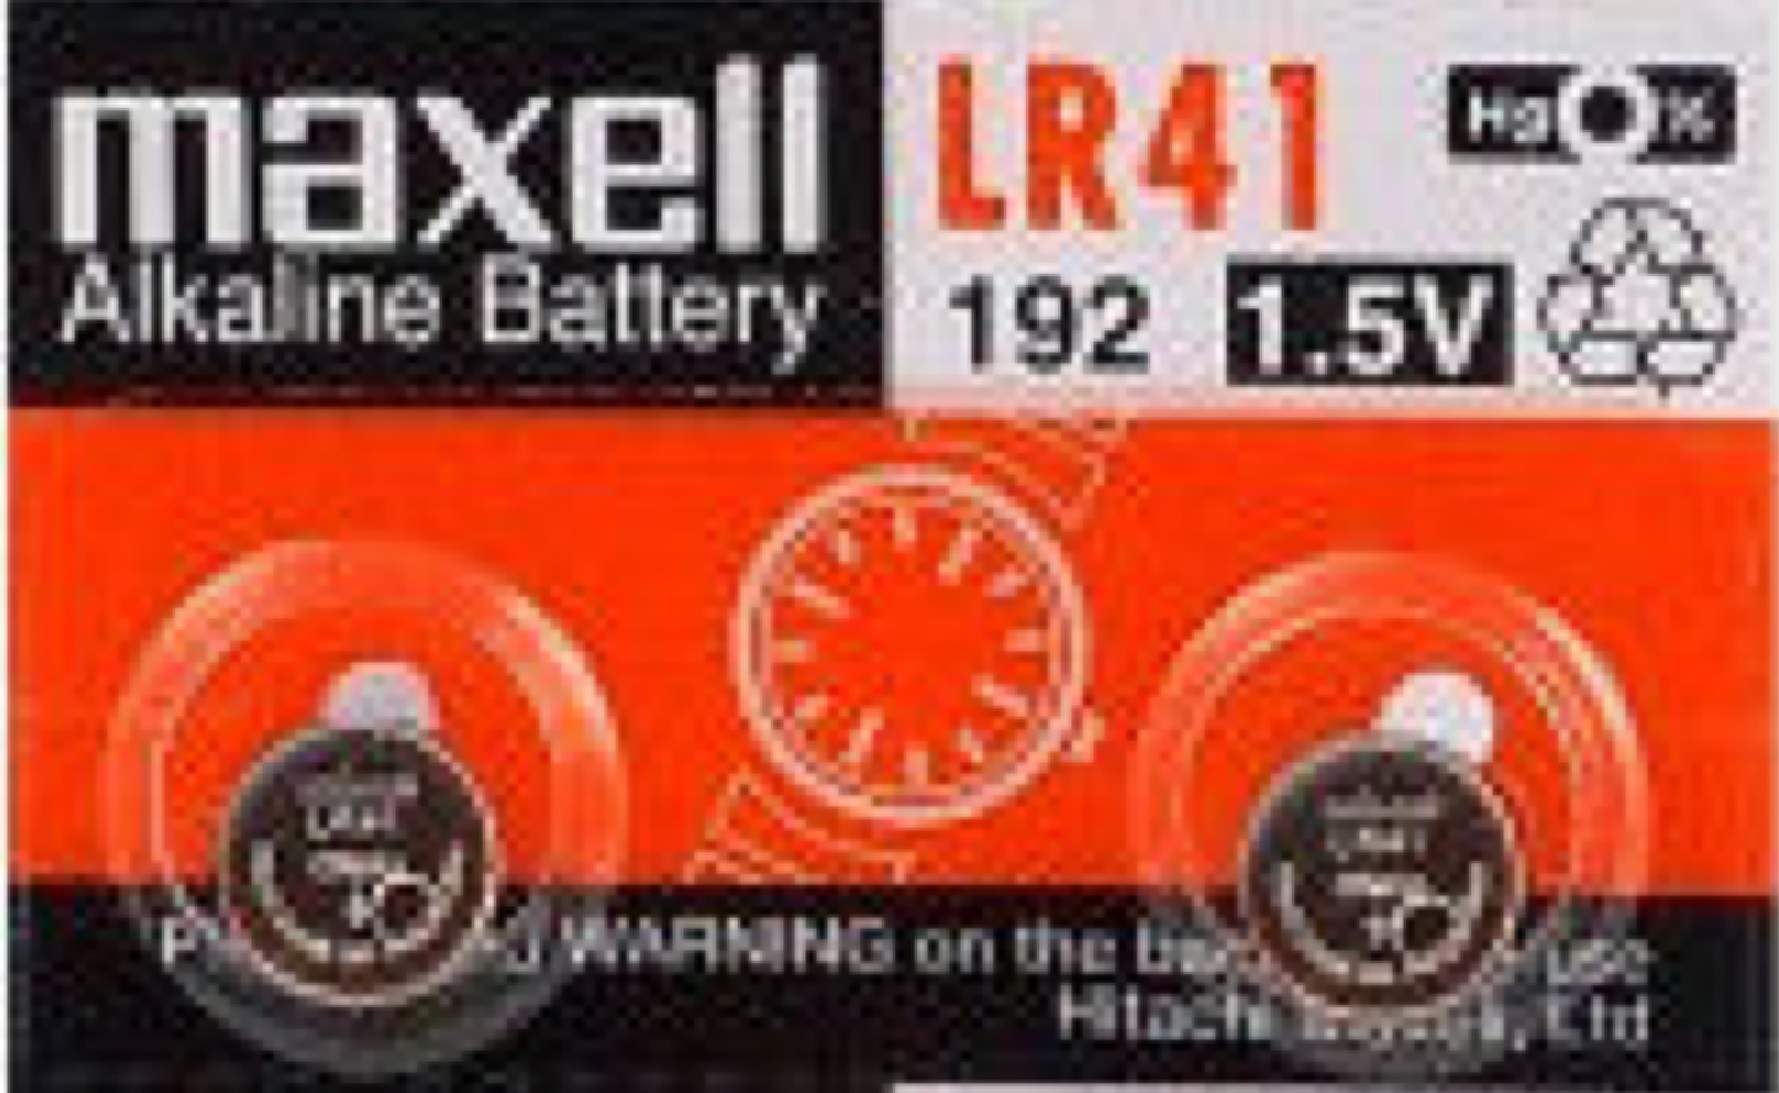 2 Piles LR41 / 192 / 392 / 384 Maxell Alcaline 1,5V